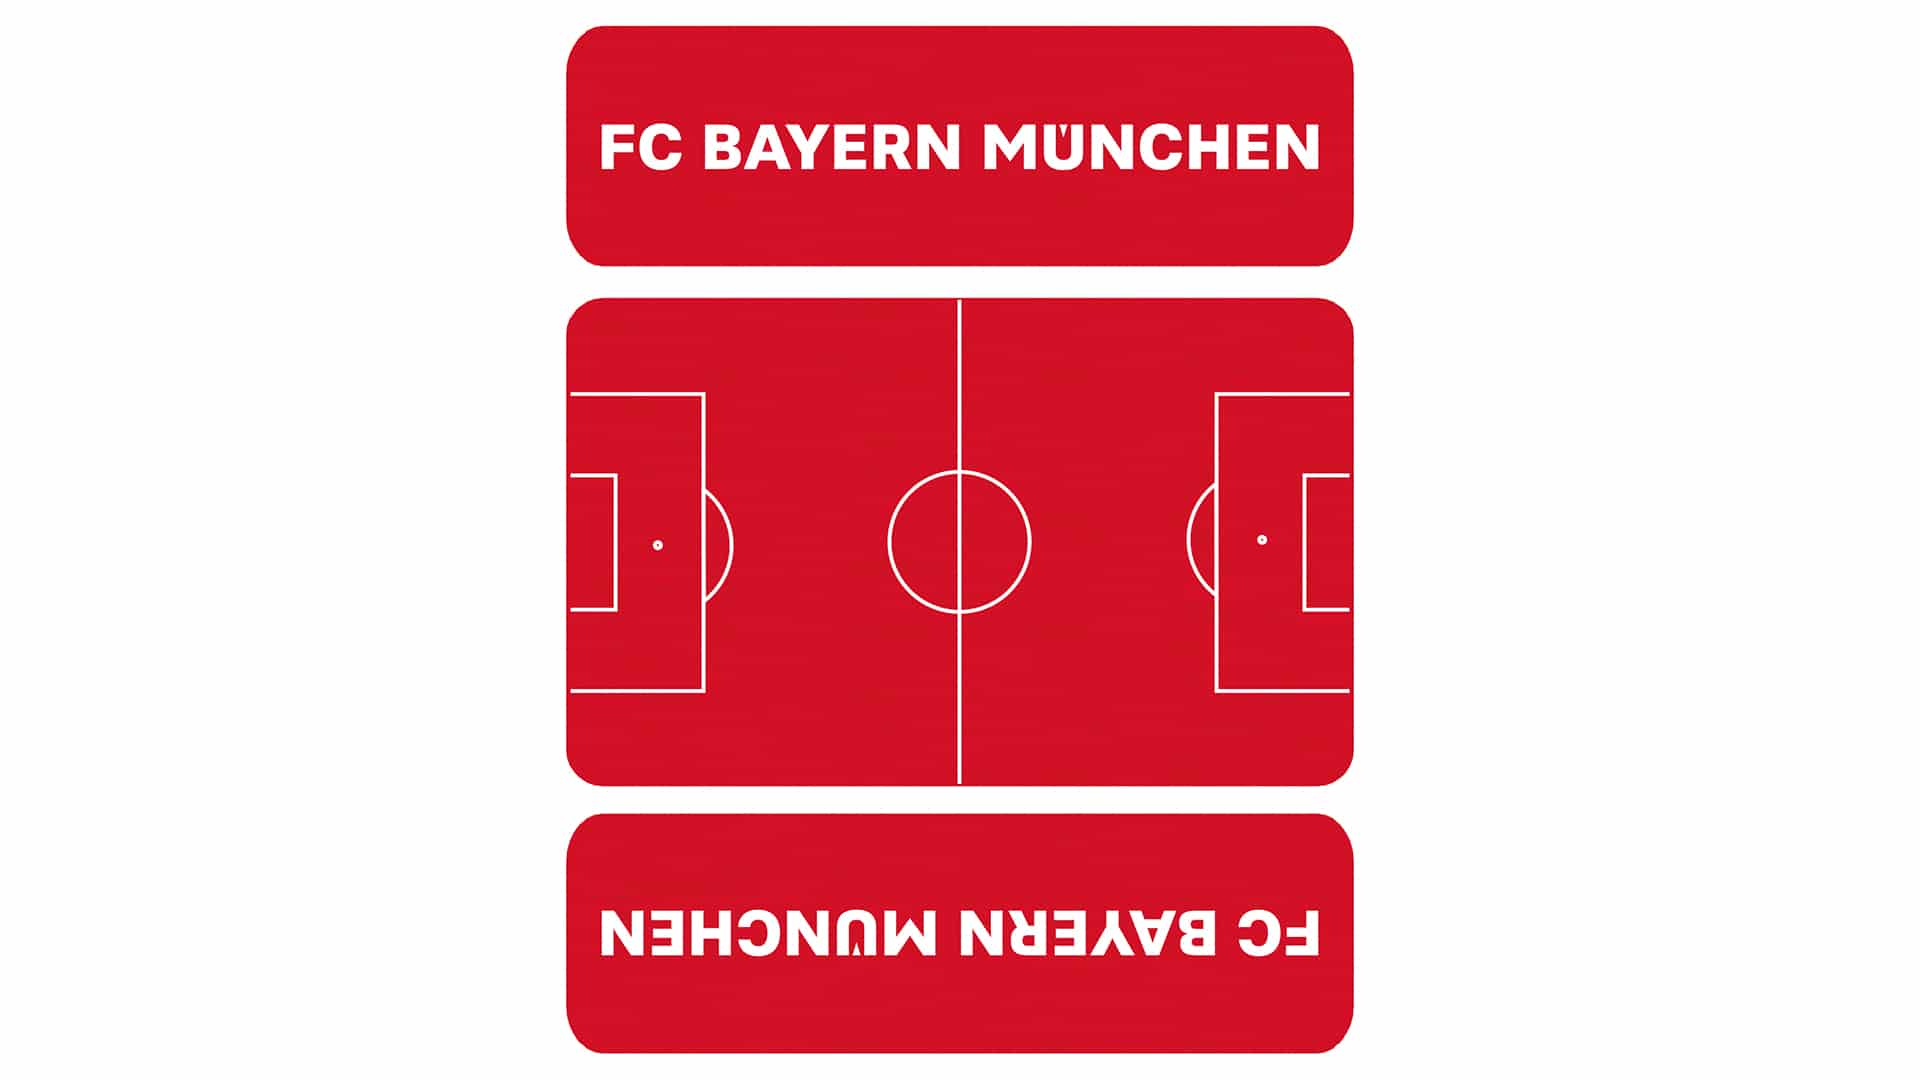 Eine Draufsicht auf das Design der kurzen Bierzeltgarnitur FC Bayern München.